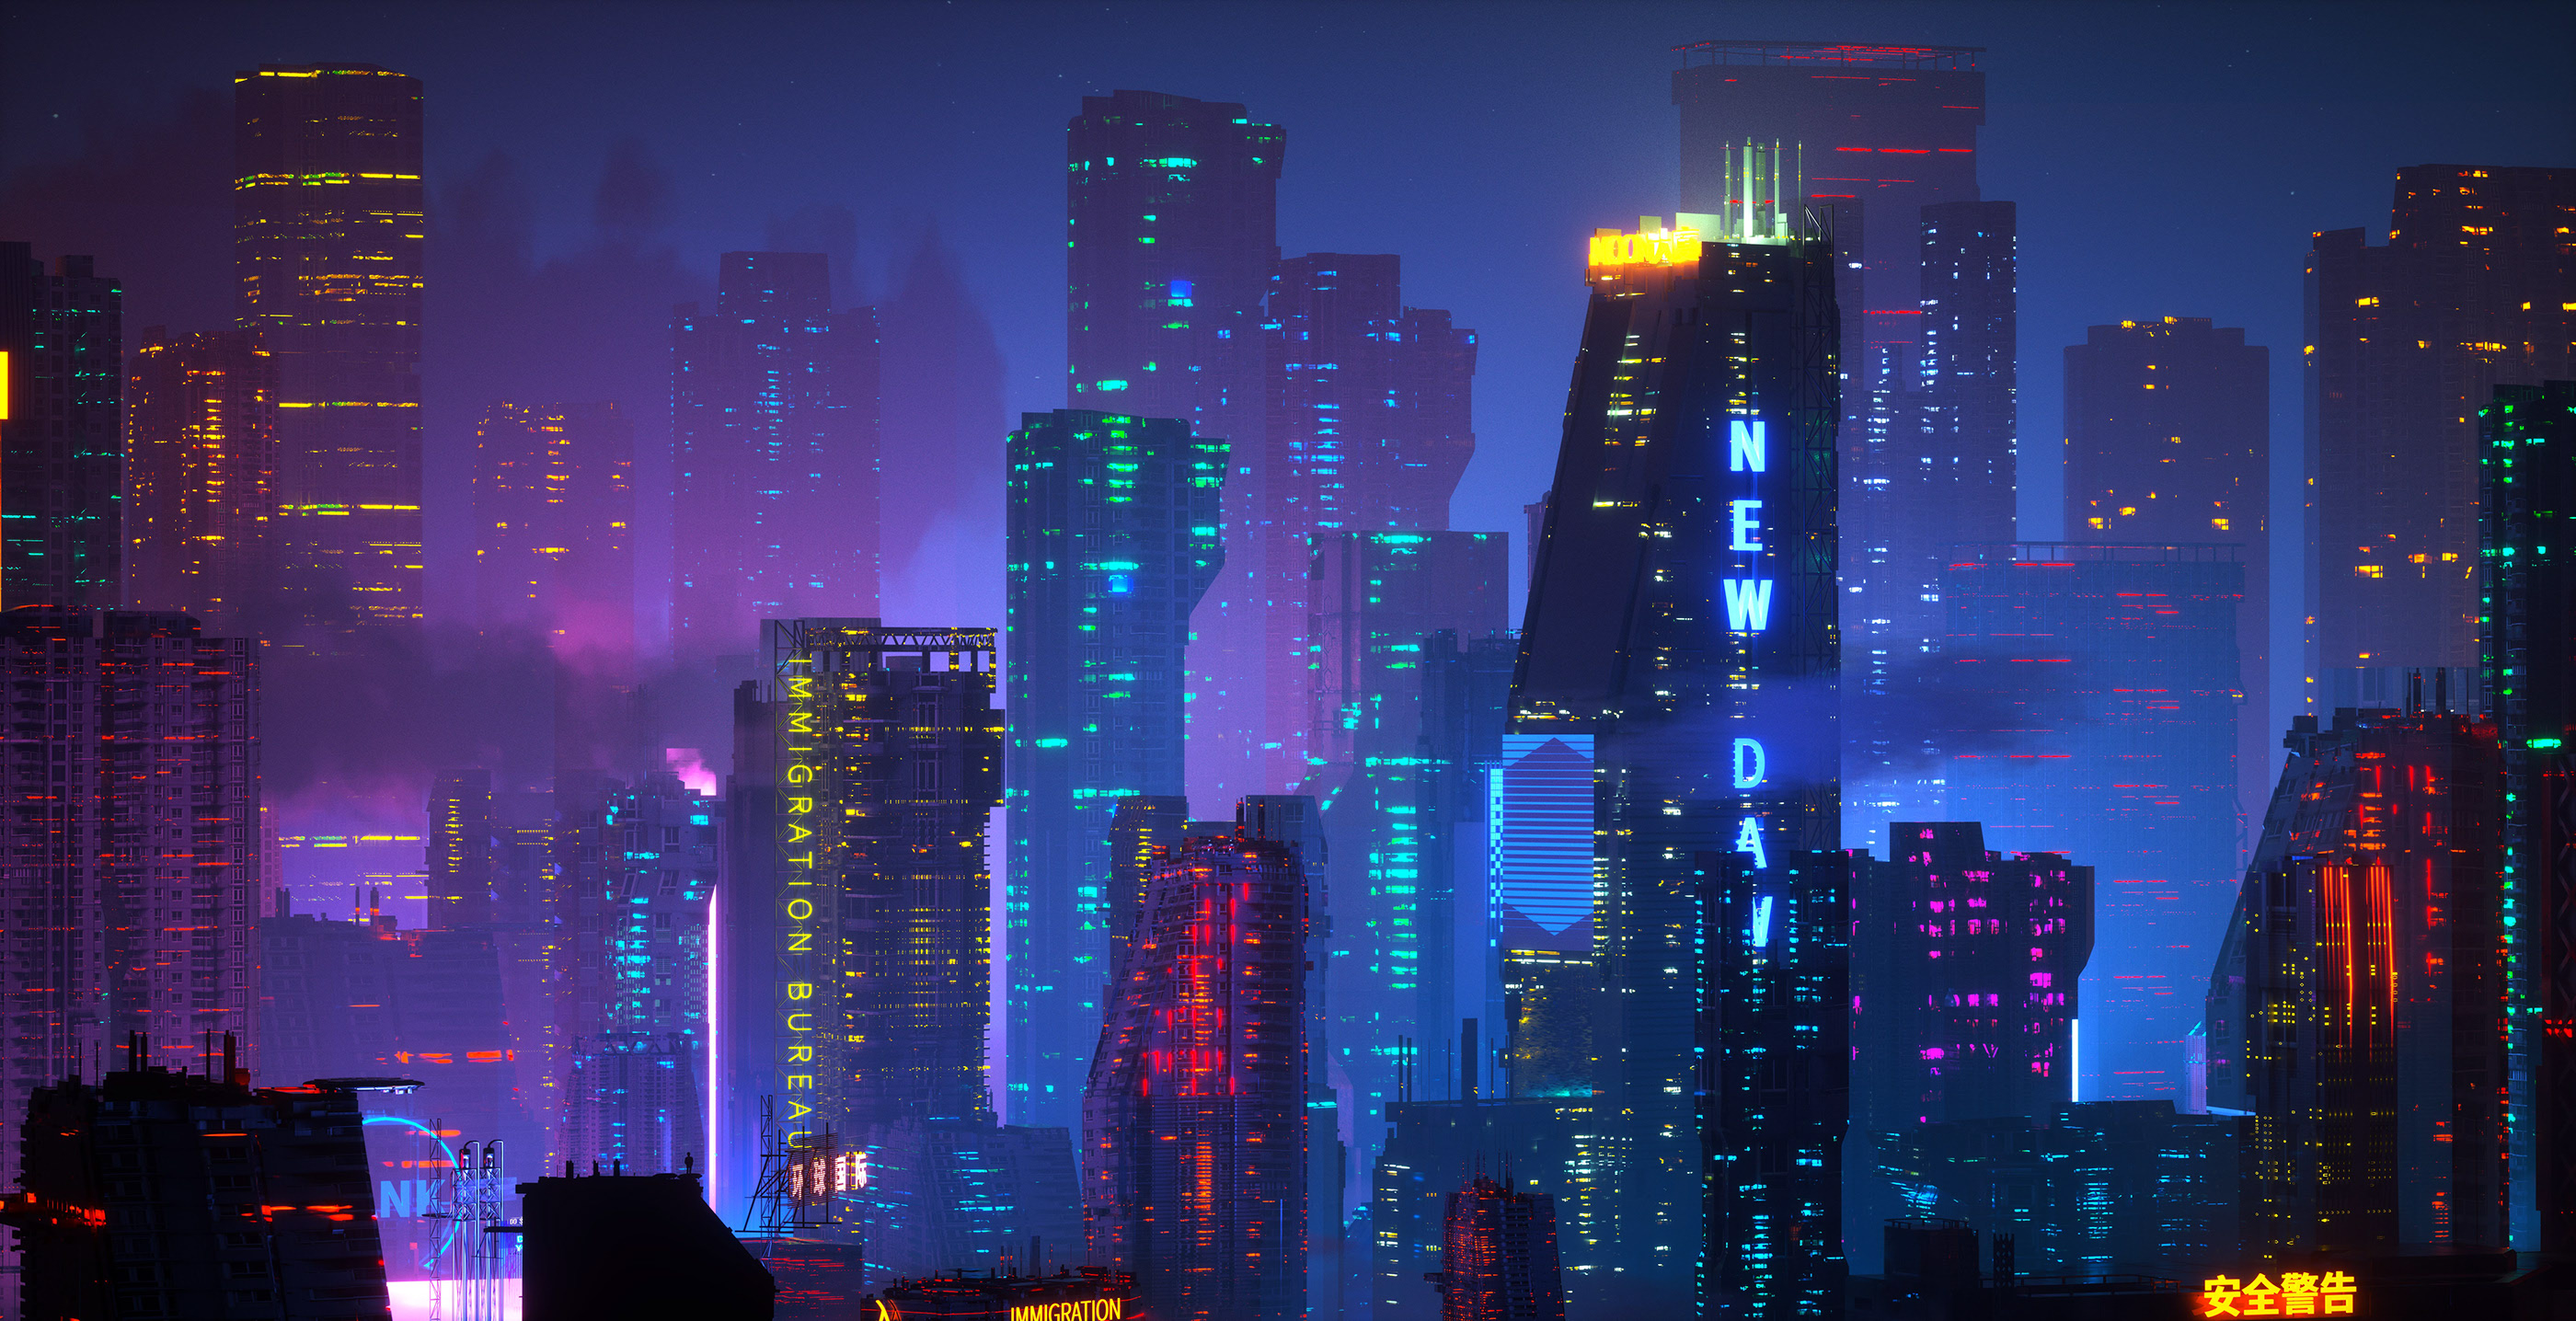 General 2800x1436 digital art artwork illustration city cityscape night futuristic futuristic city cyberpunk building architecture skyscraper neon